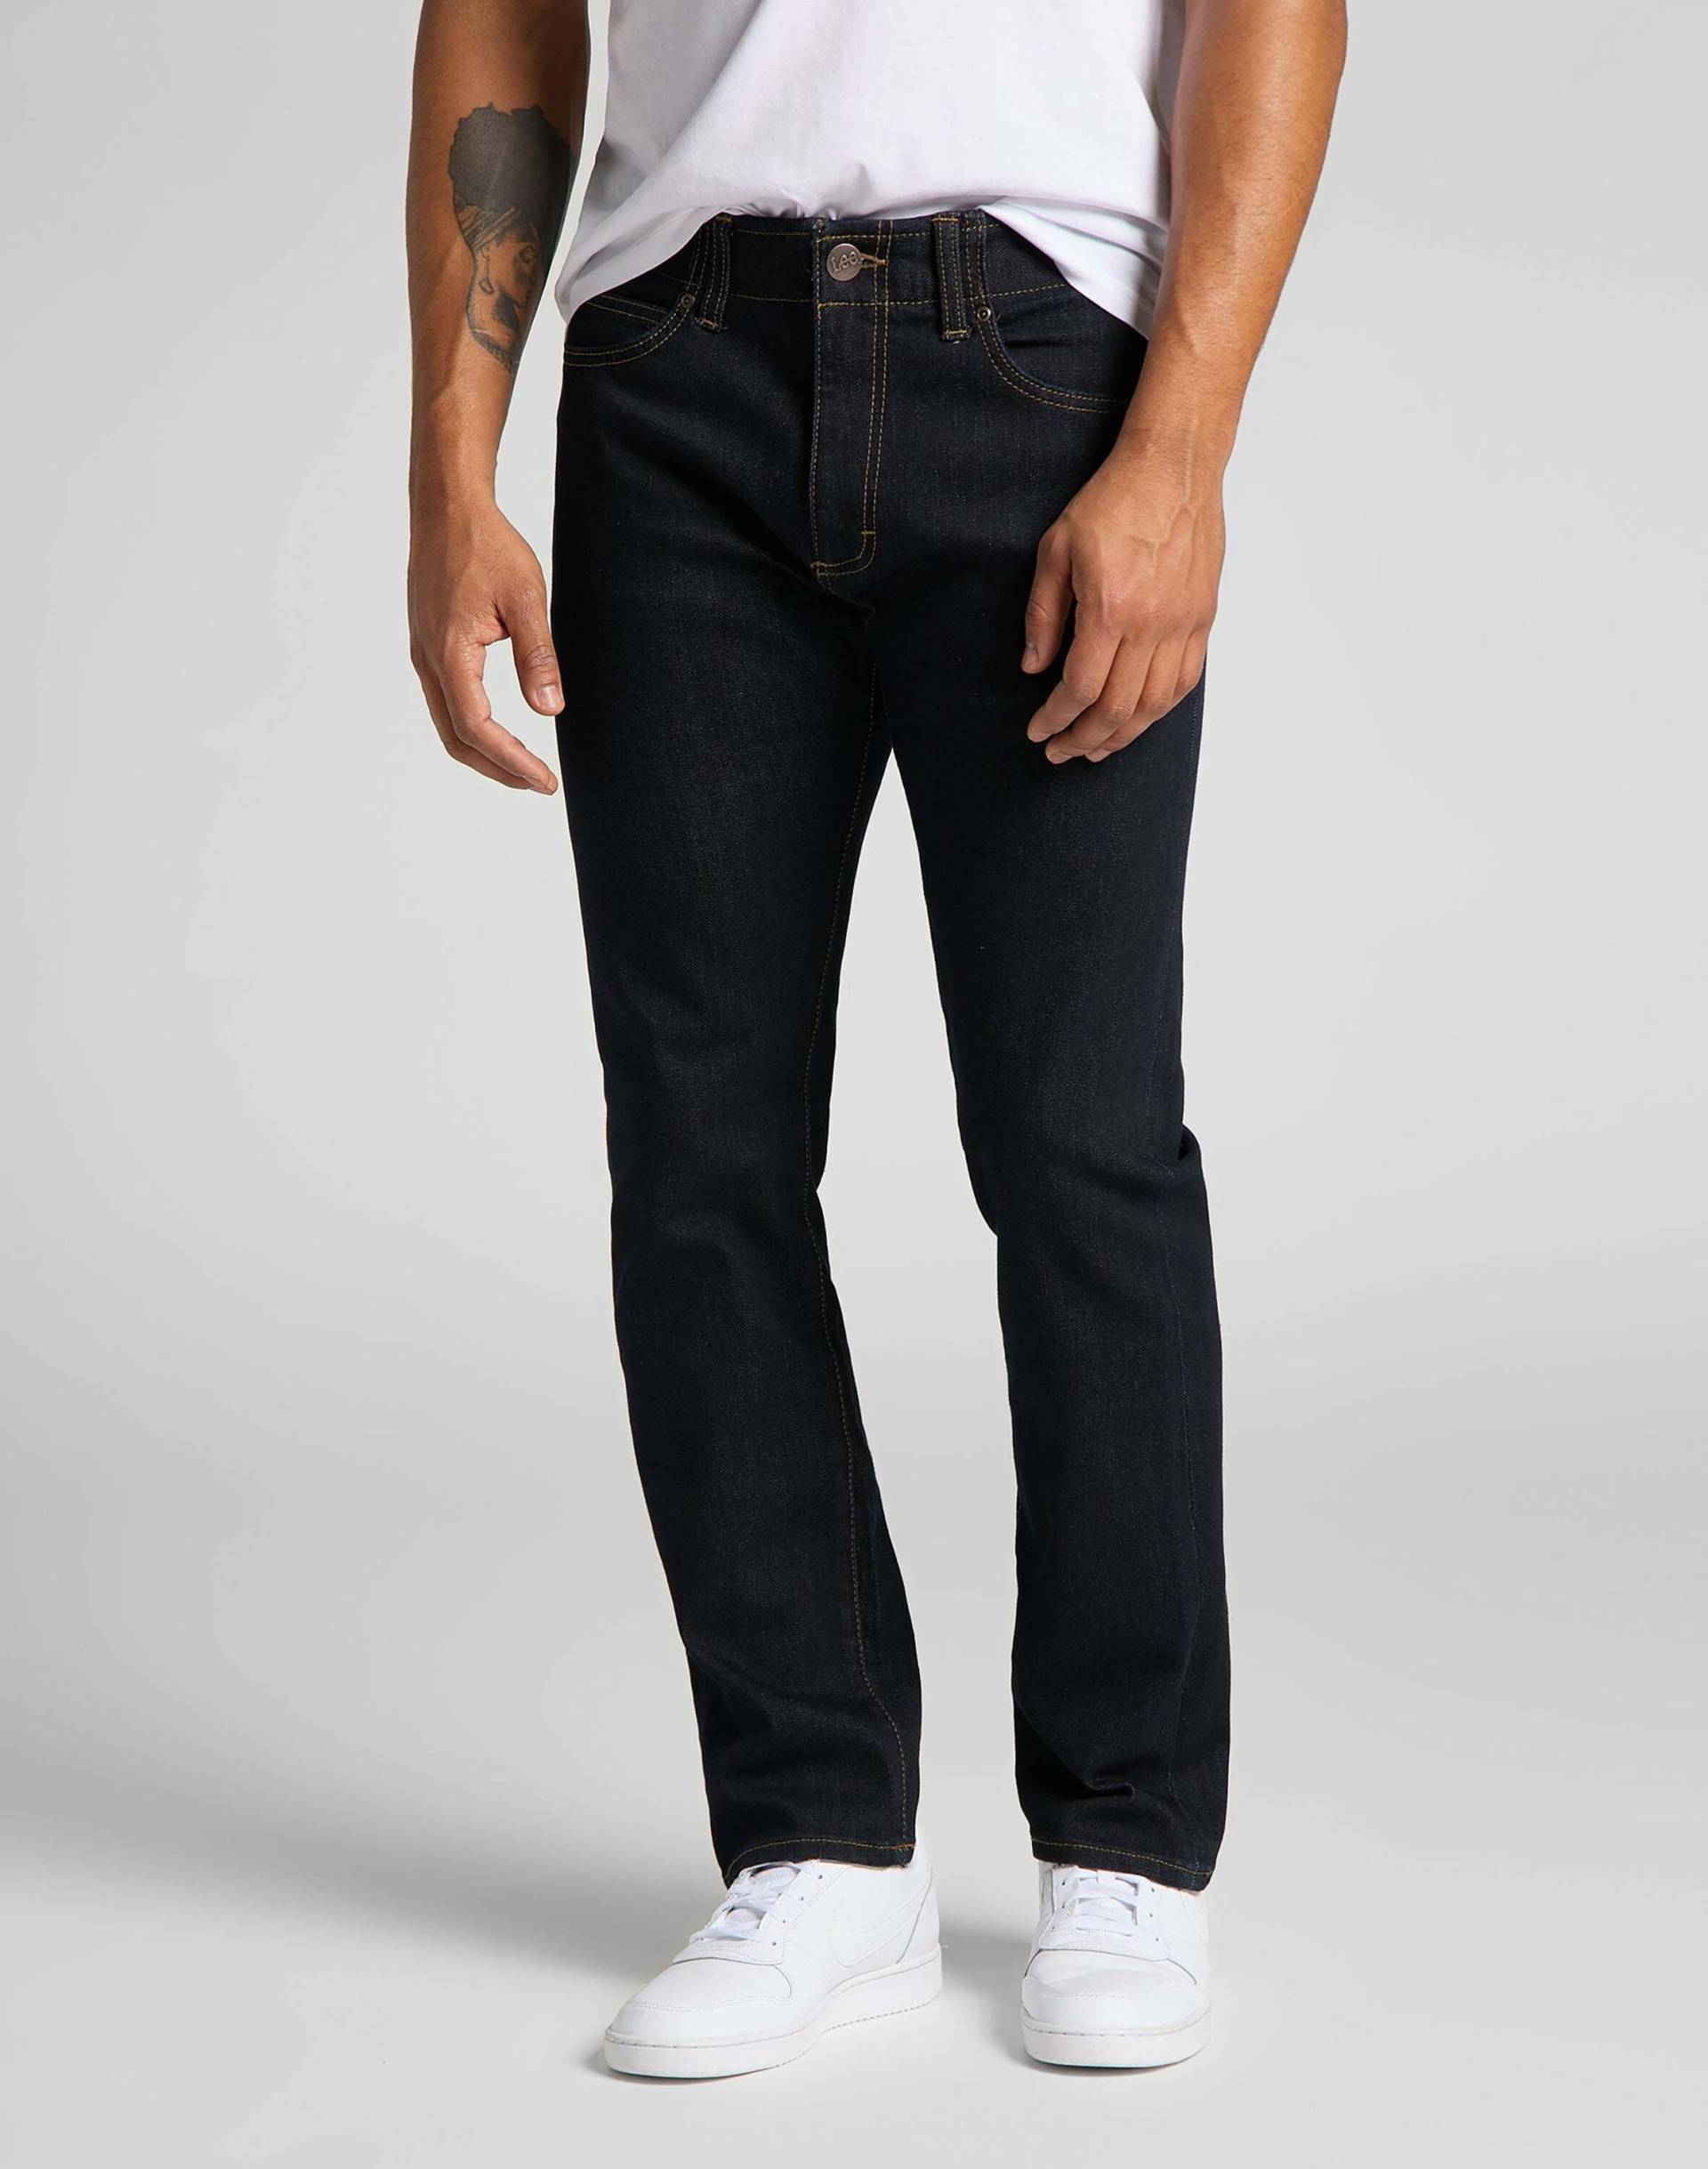 Jeans Slim Fit Mvp Herren Blau L30/W38 von Lee